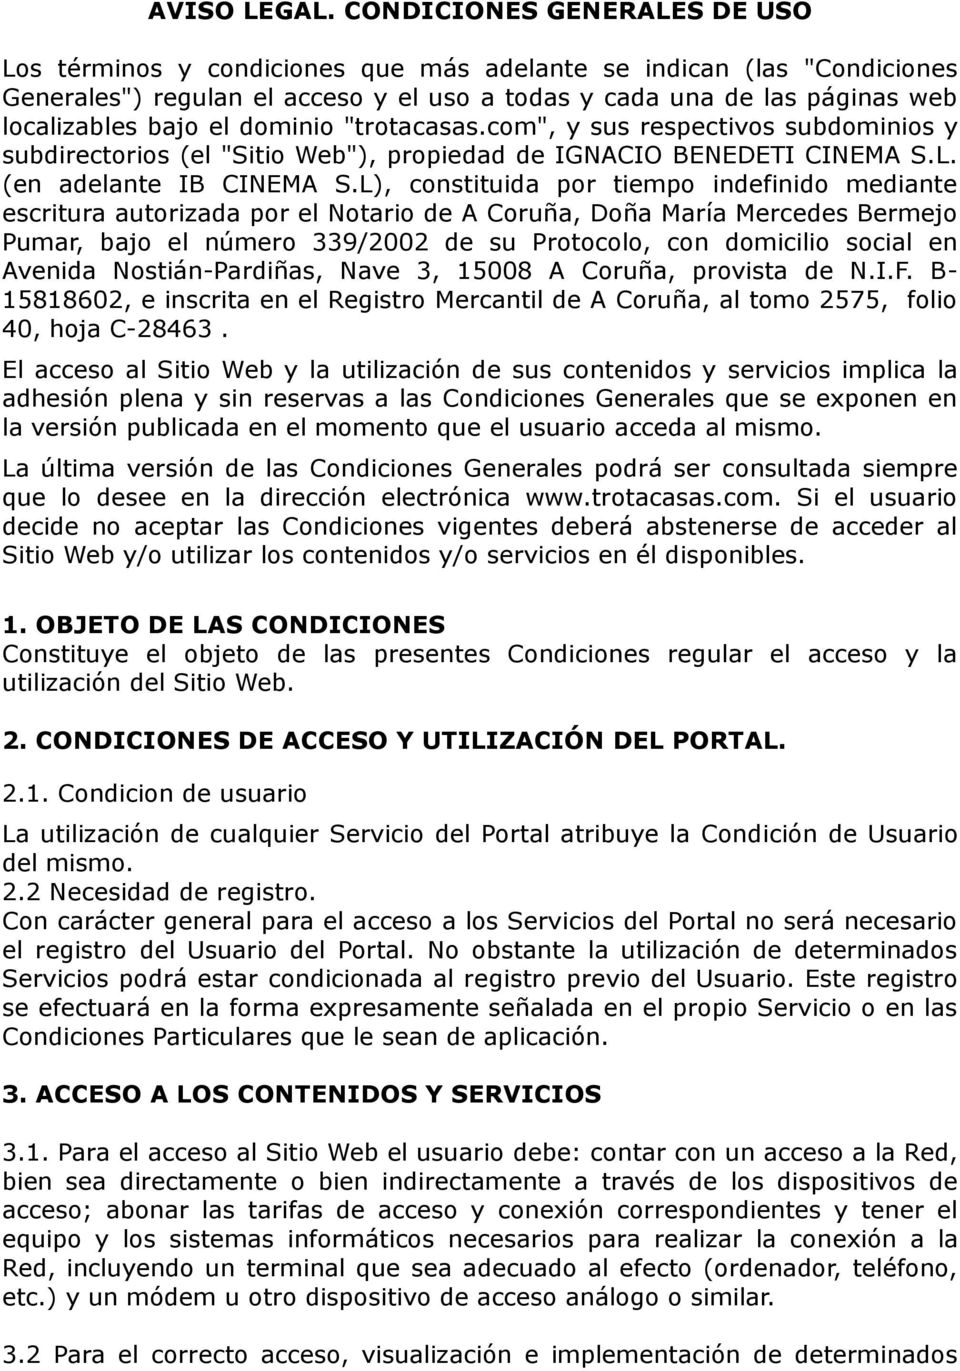 dominio "trotacasas.com", y sus respectivos subdominios y subdirectorios (el "Sitio Web"), propiedad de IGNACIO BENEDETI CINEMA S.L. (en adelante IB CINEMA S.